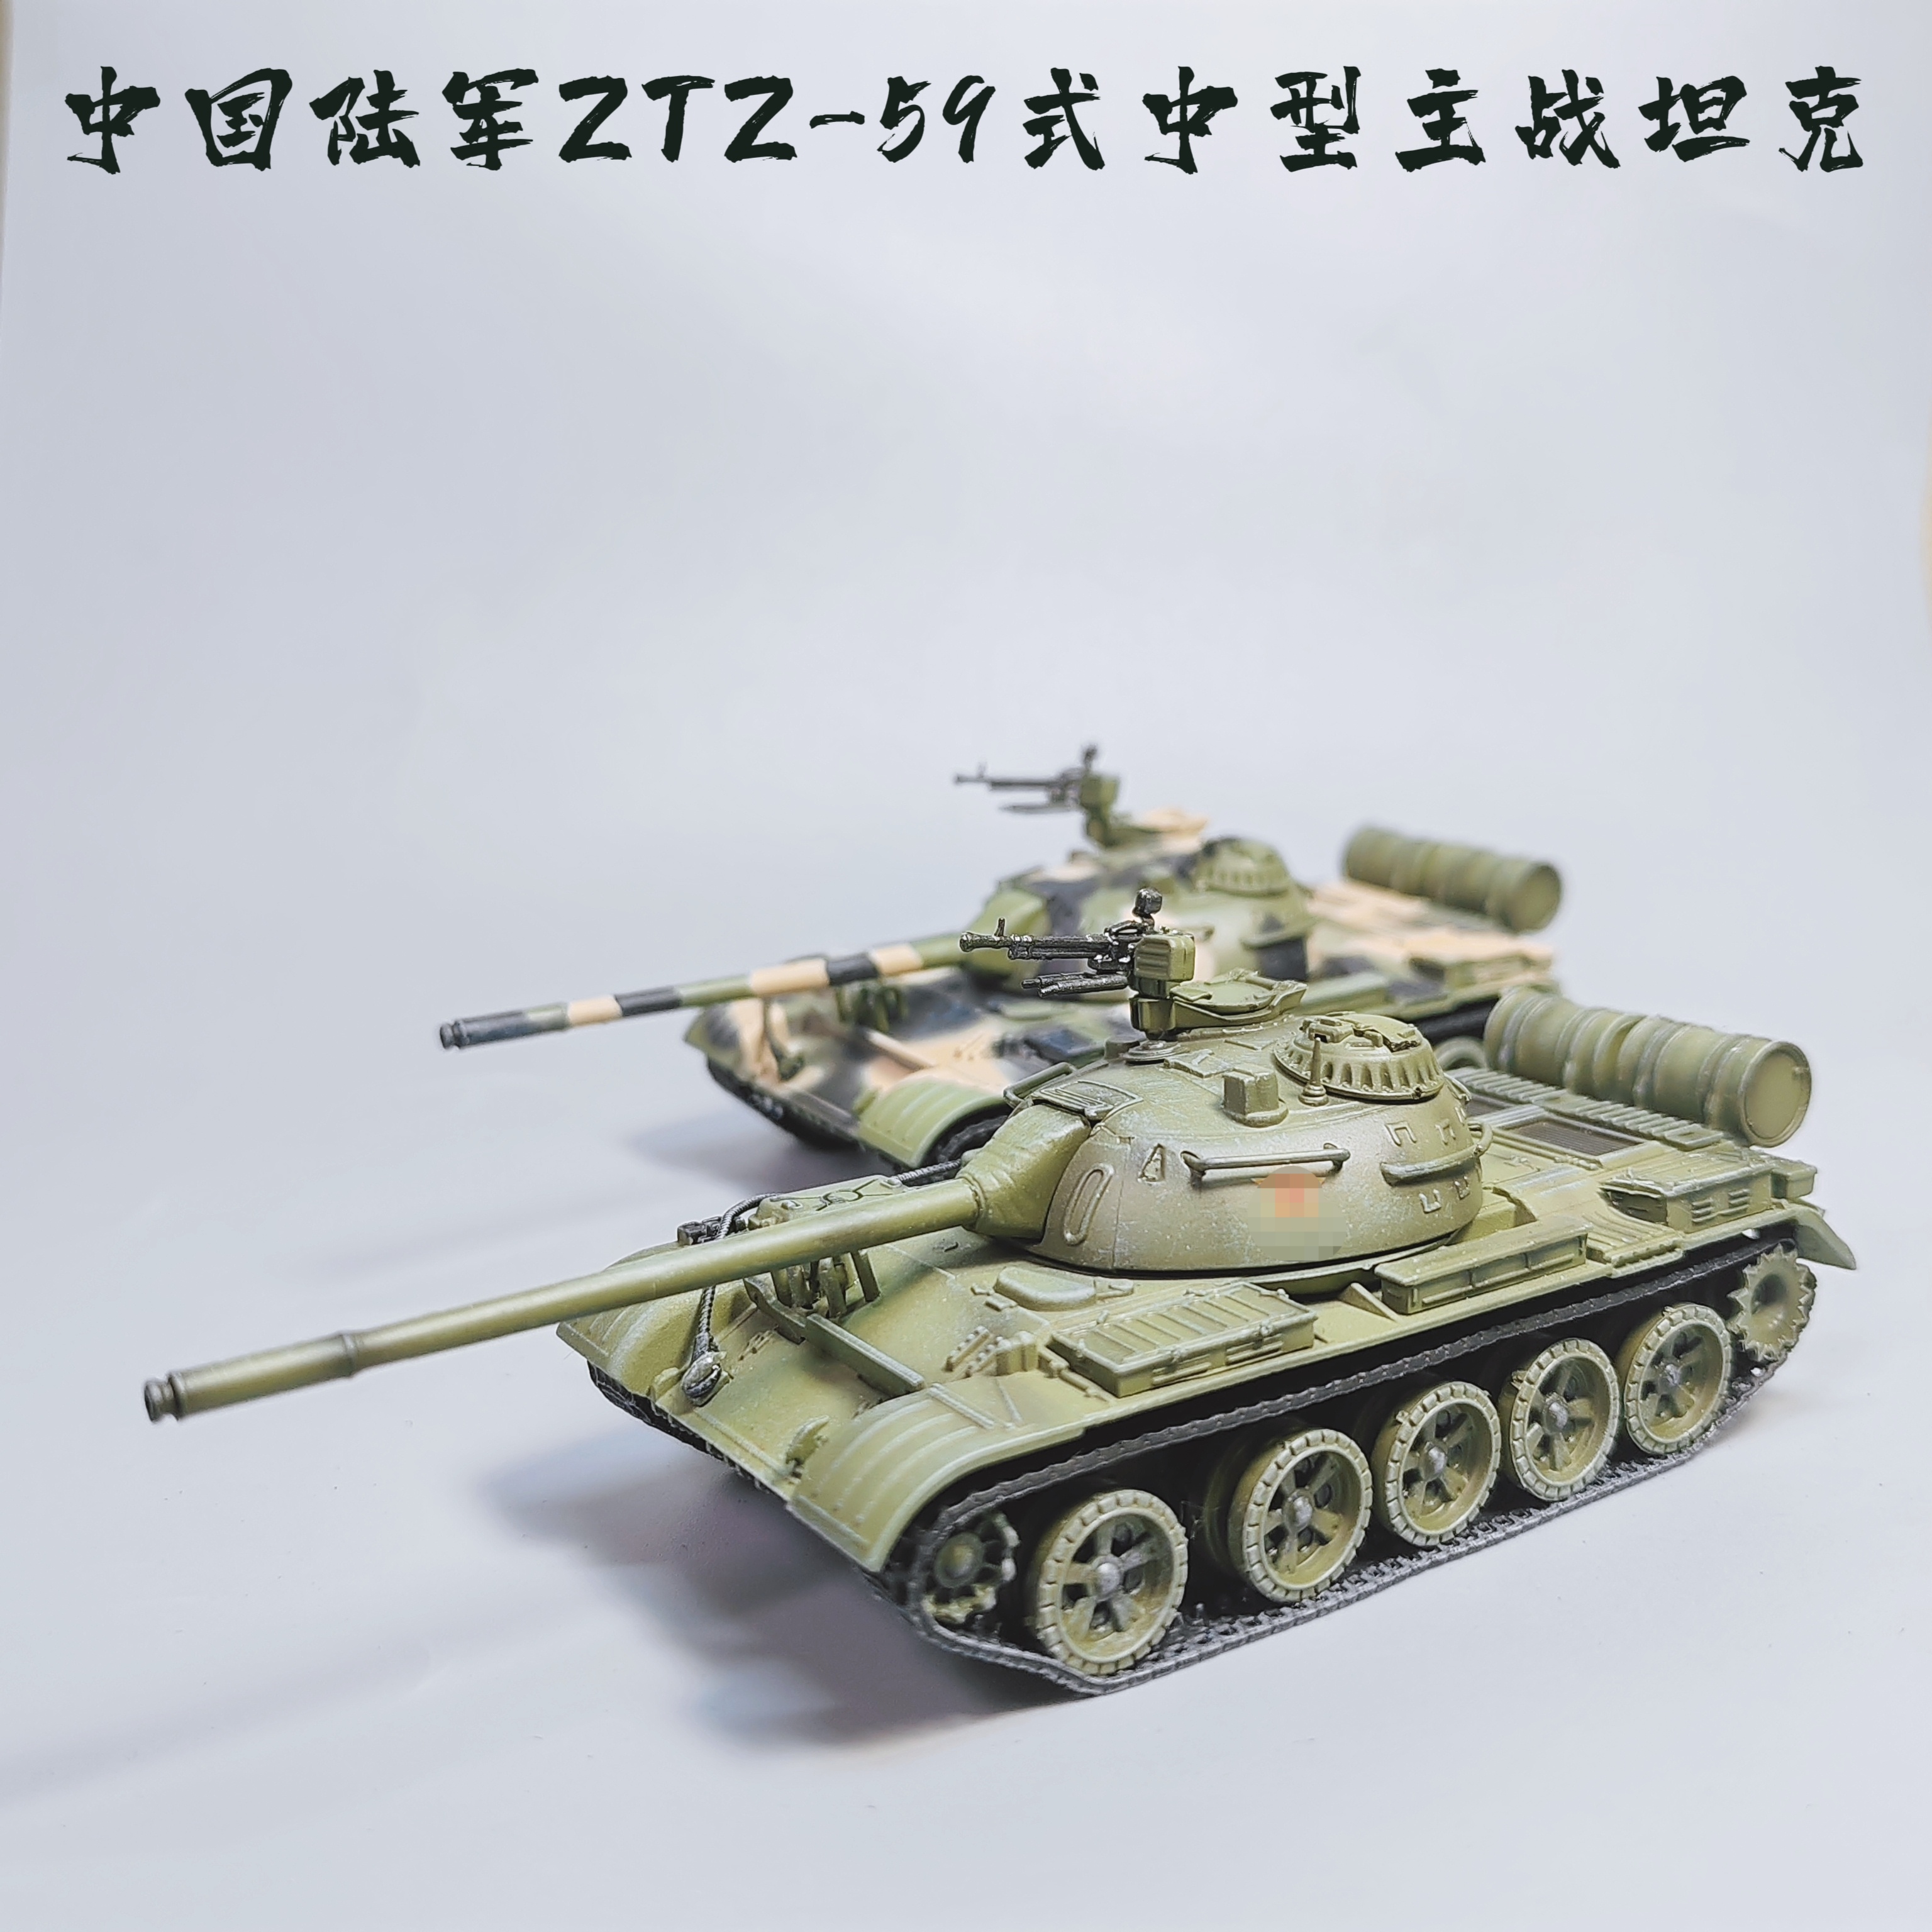 1/72中国59式主战坦克模型合金仿真军事玩具微缩艺术摄影道具礼物